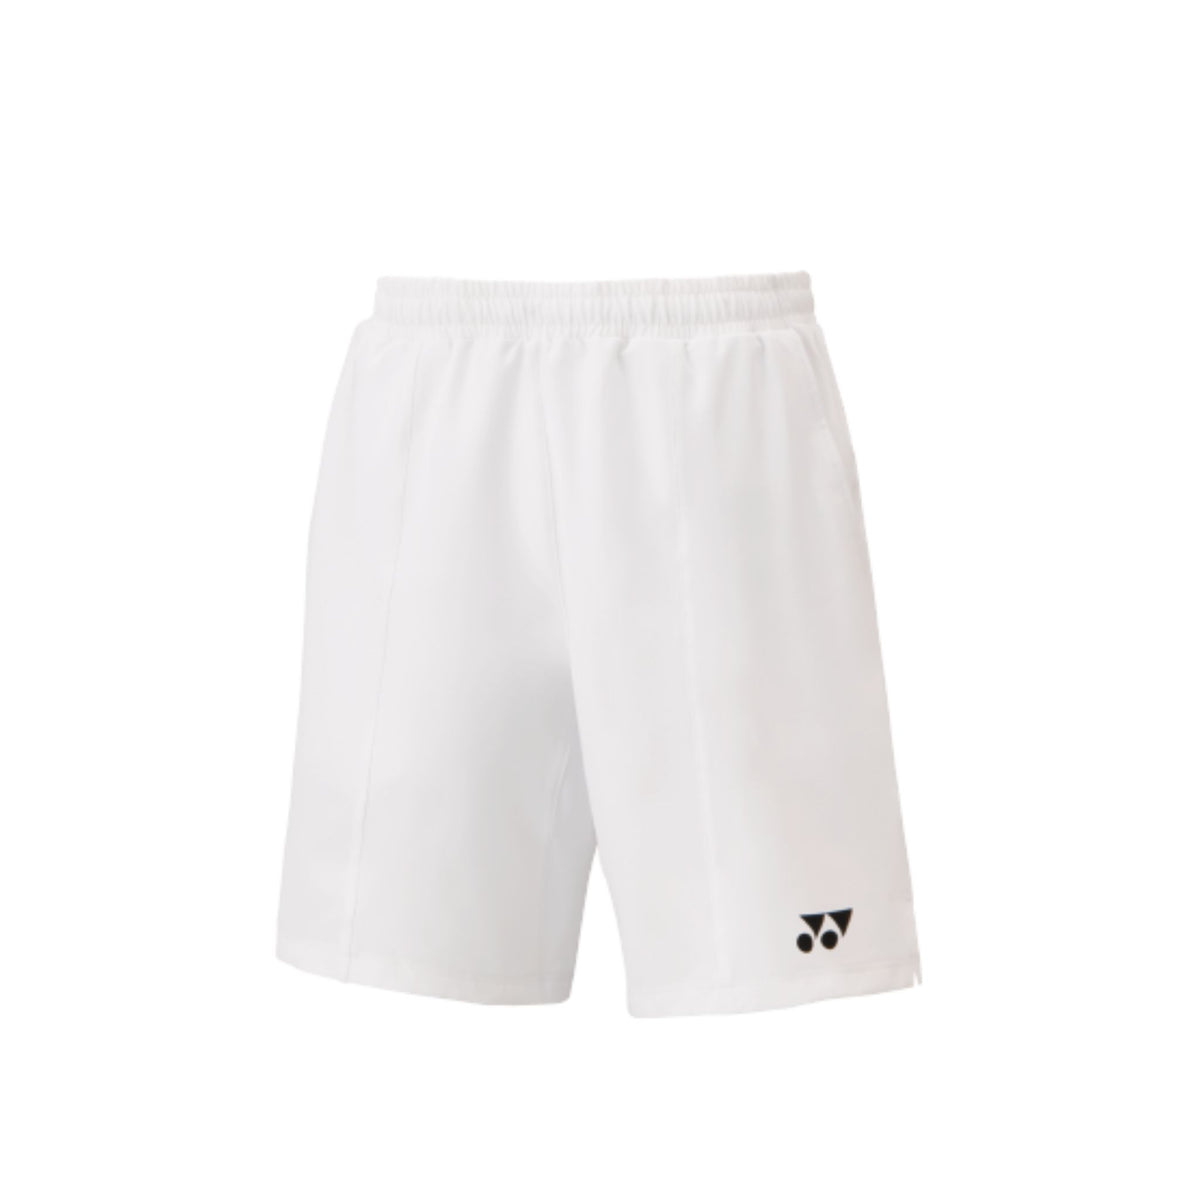 Yonex 15134 Men's Shorts [White] - Yumo Pro Shop – Yumo Pro Shop ...